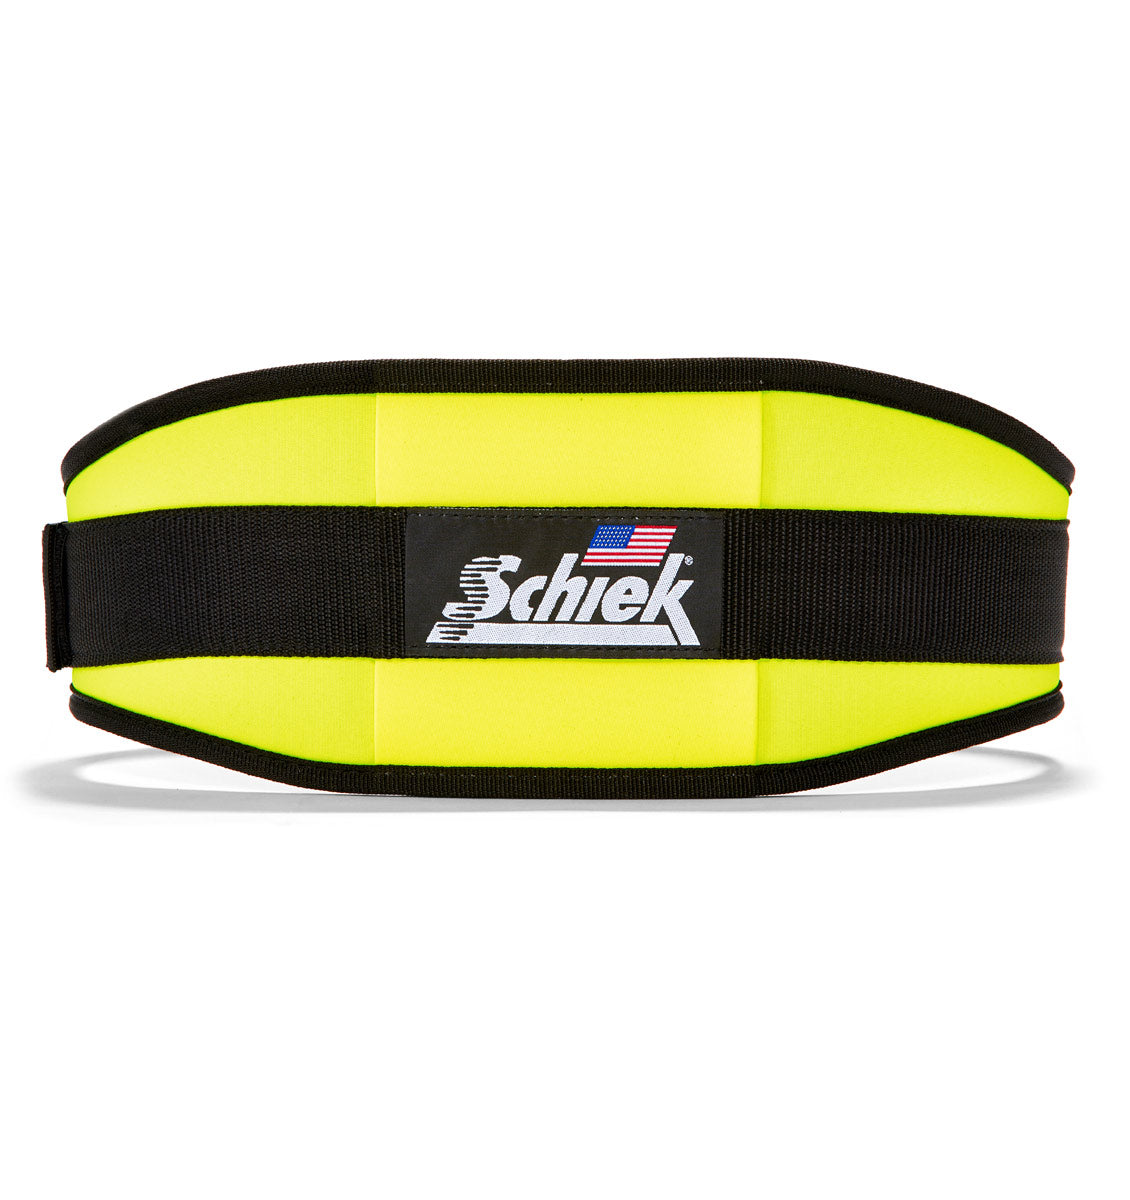 2006 Schiek Contour Weight Lifting Belt Neon Yellow Back